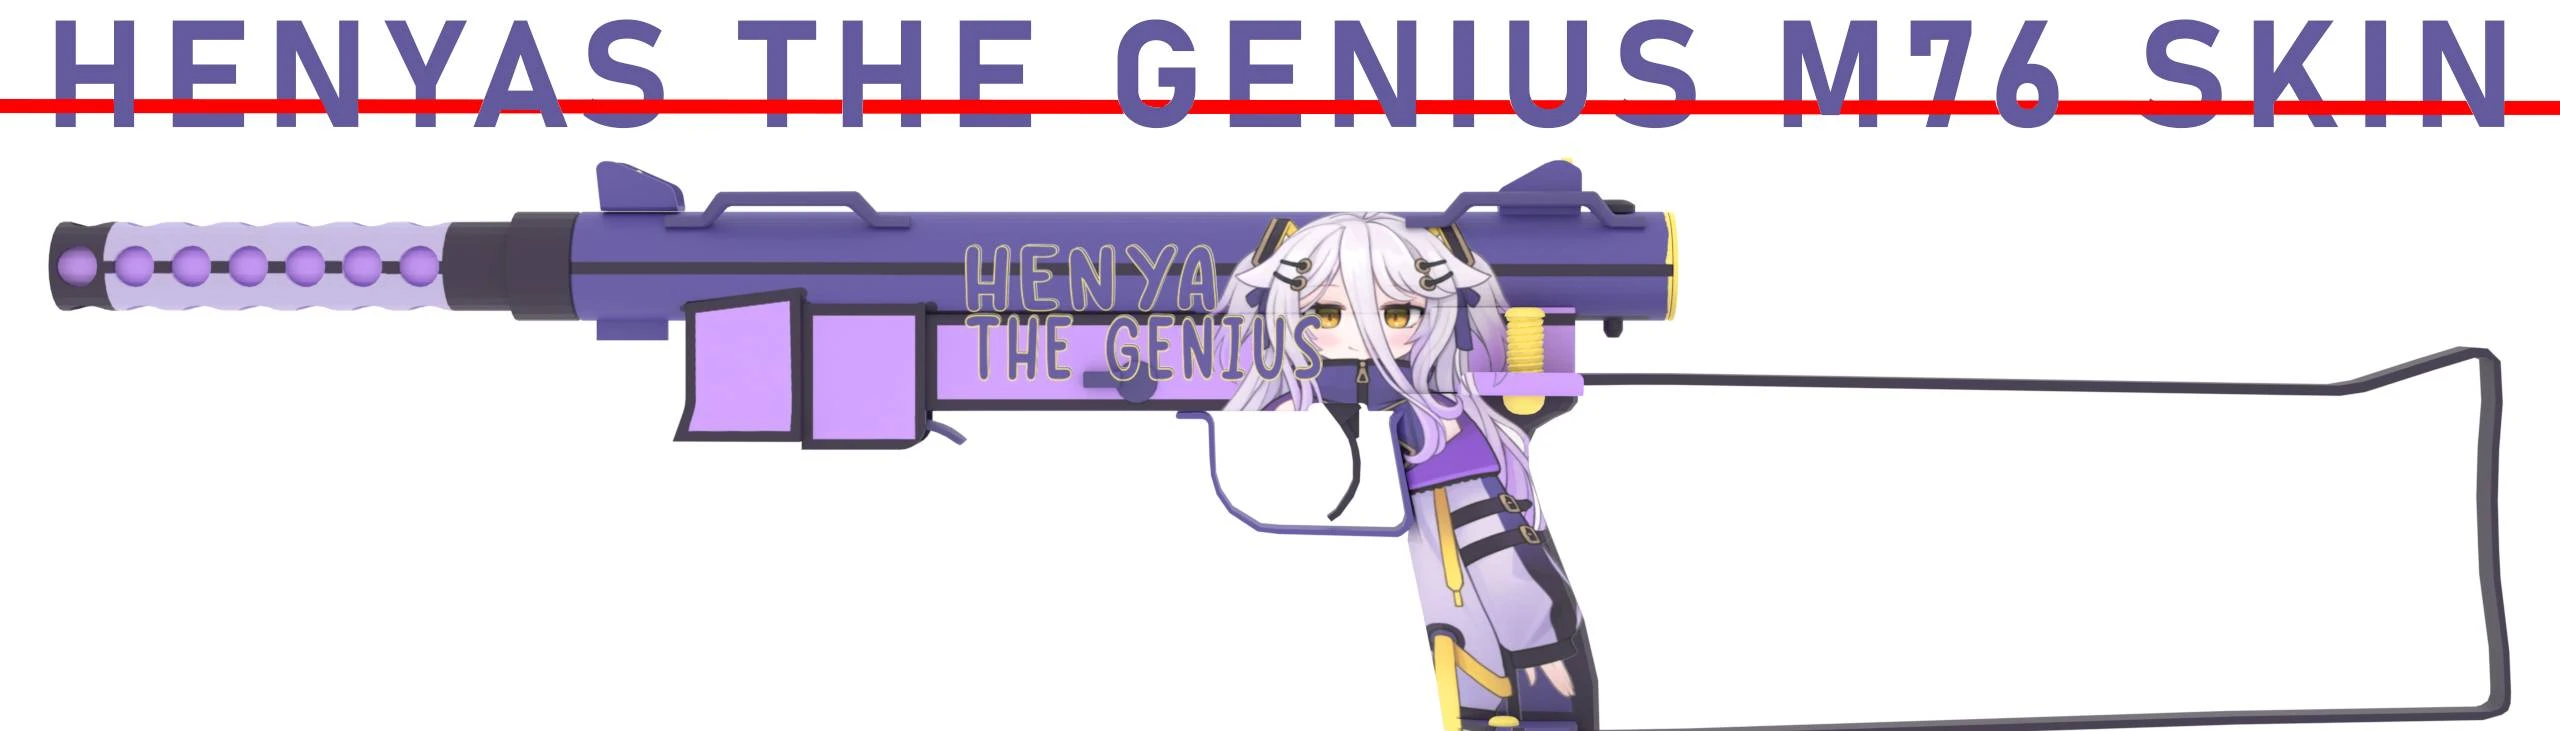 Henya the Genius